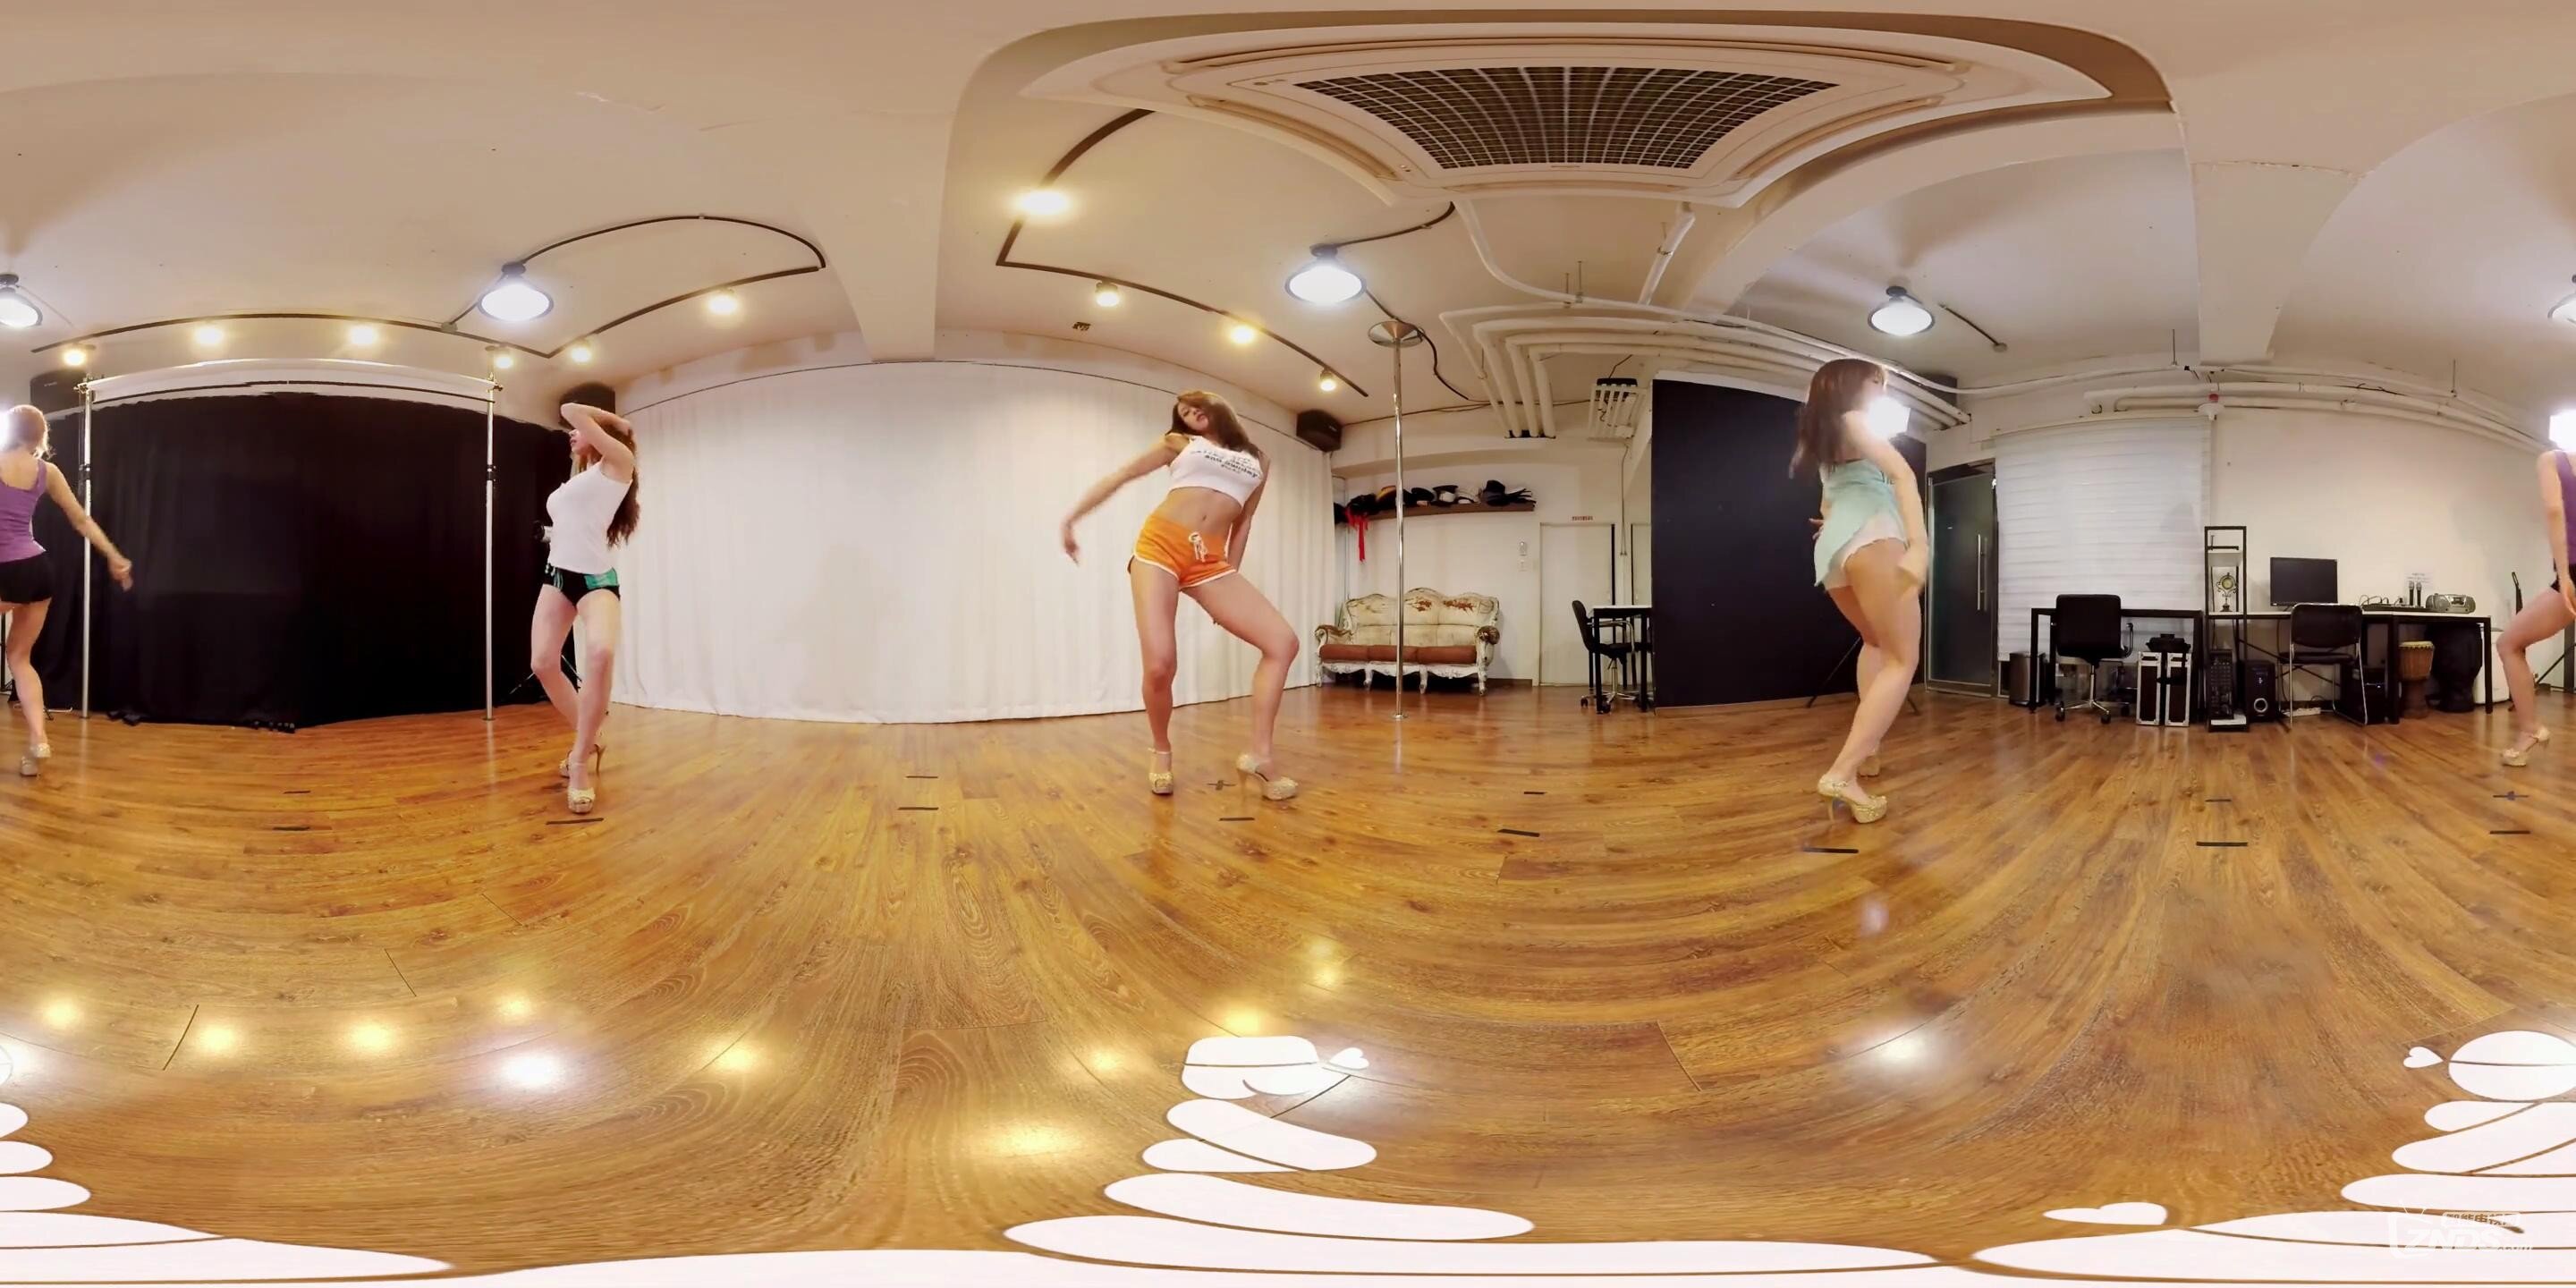 360°全景视频-美女性感热舞-小番茄VR_20160812224505.JPG